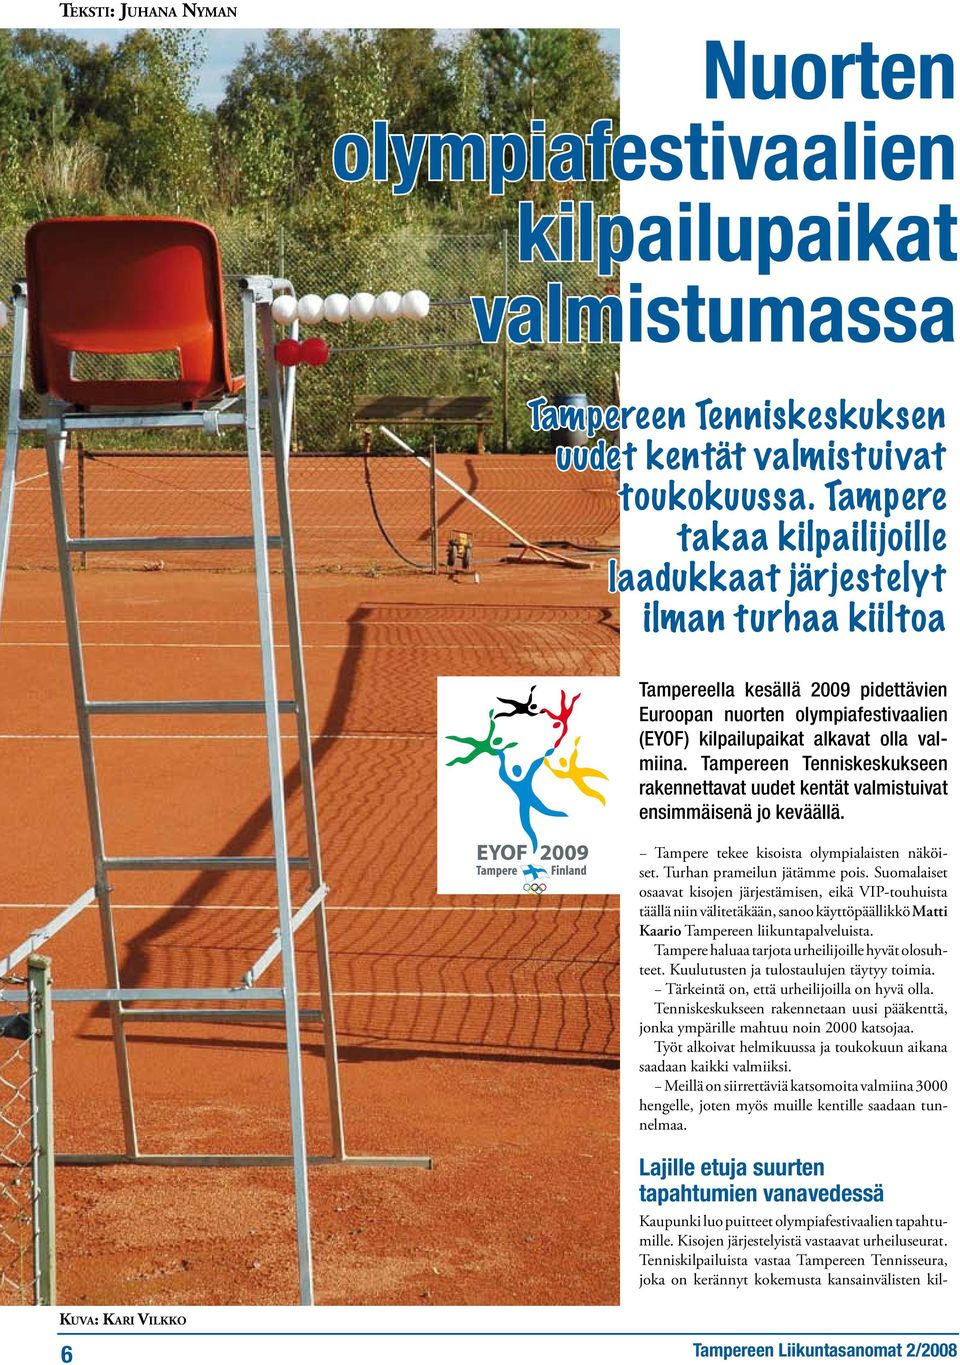 Tampereen Tenniskeskukseen rakennettavat uudet kentät valmistuivat ensimmäisenä jo keväällä. Tampere tekee kisoista olympialaisten näköiset. Turhan prameilun jätämme pois.